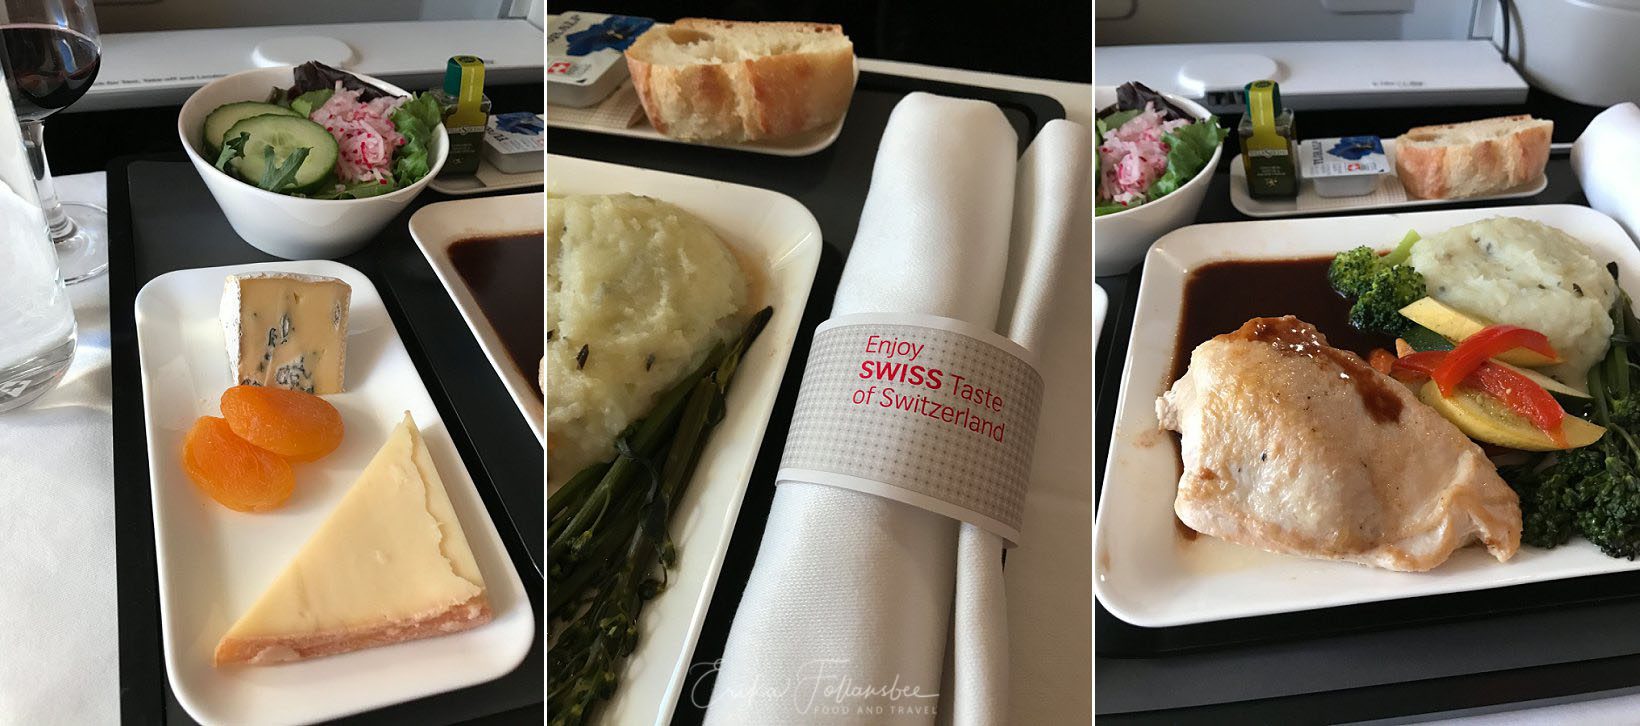 Swiss Air Business Class Menu Dinner